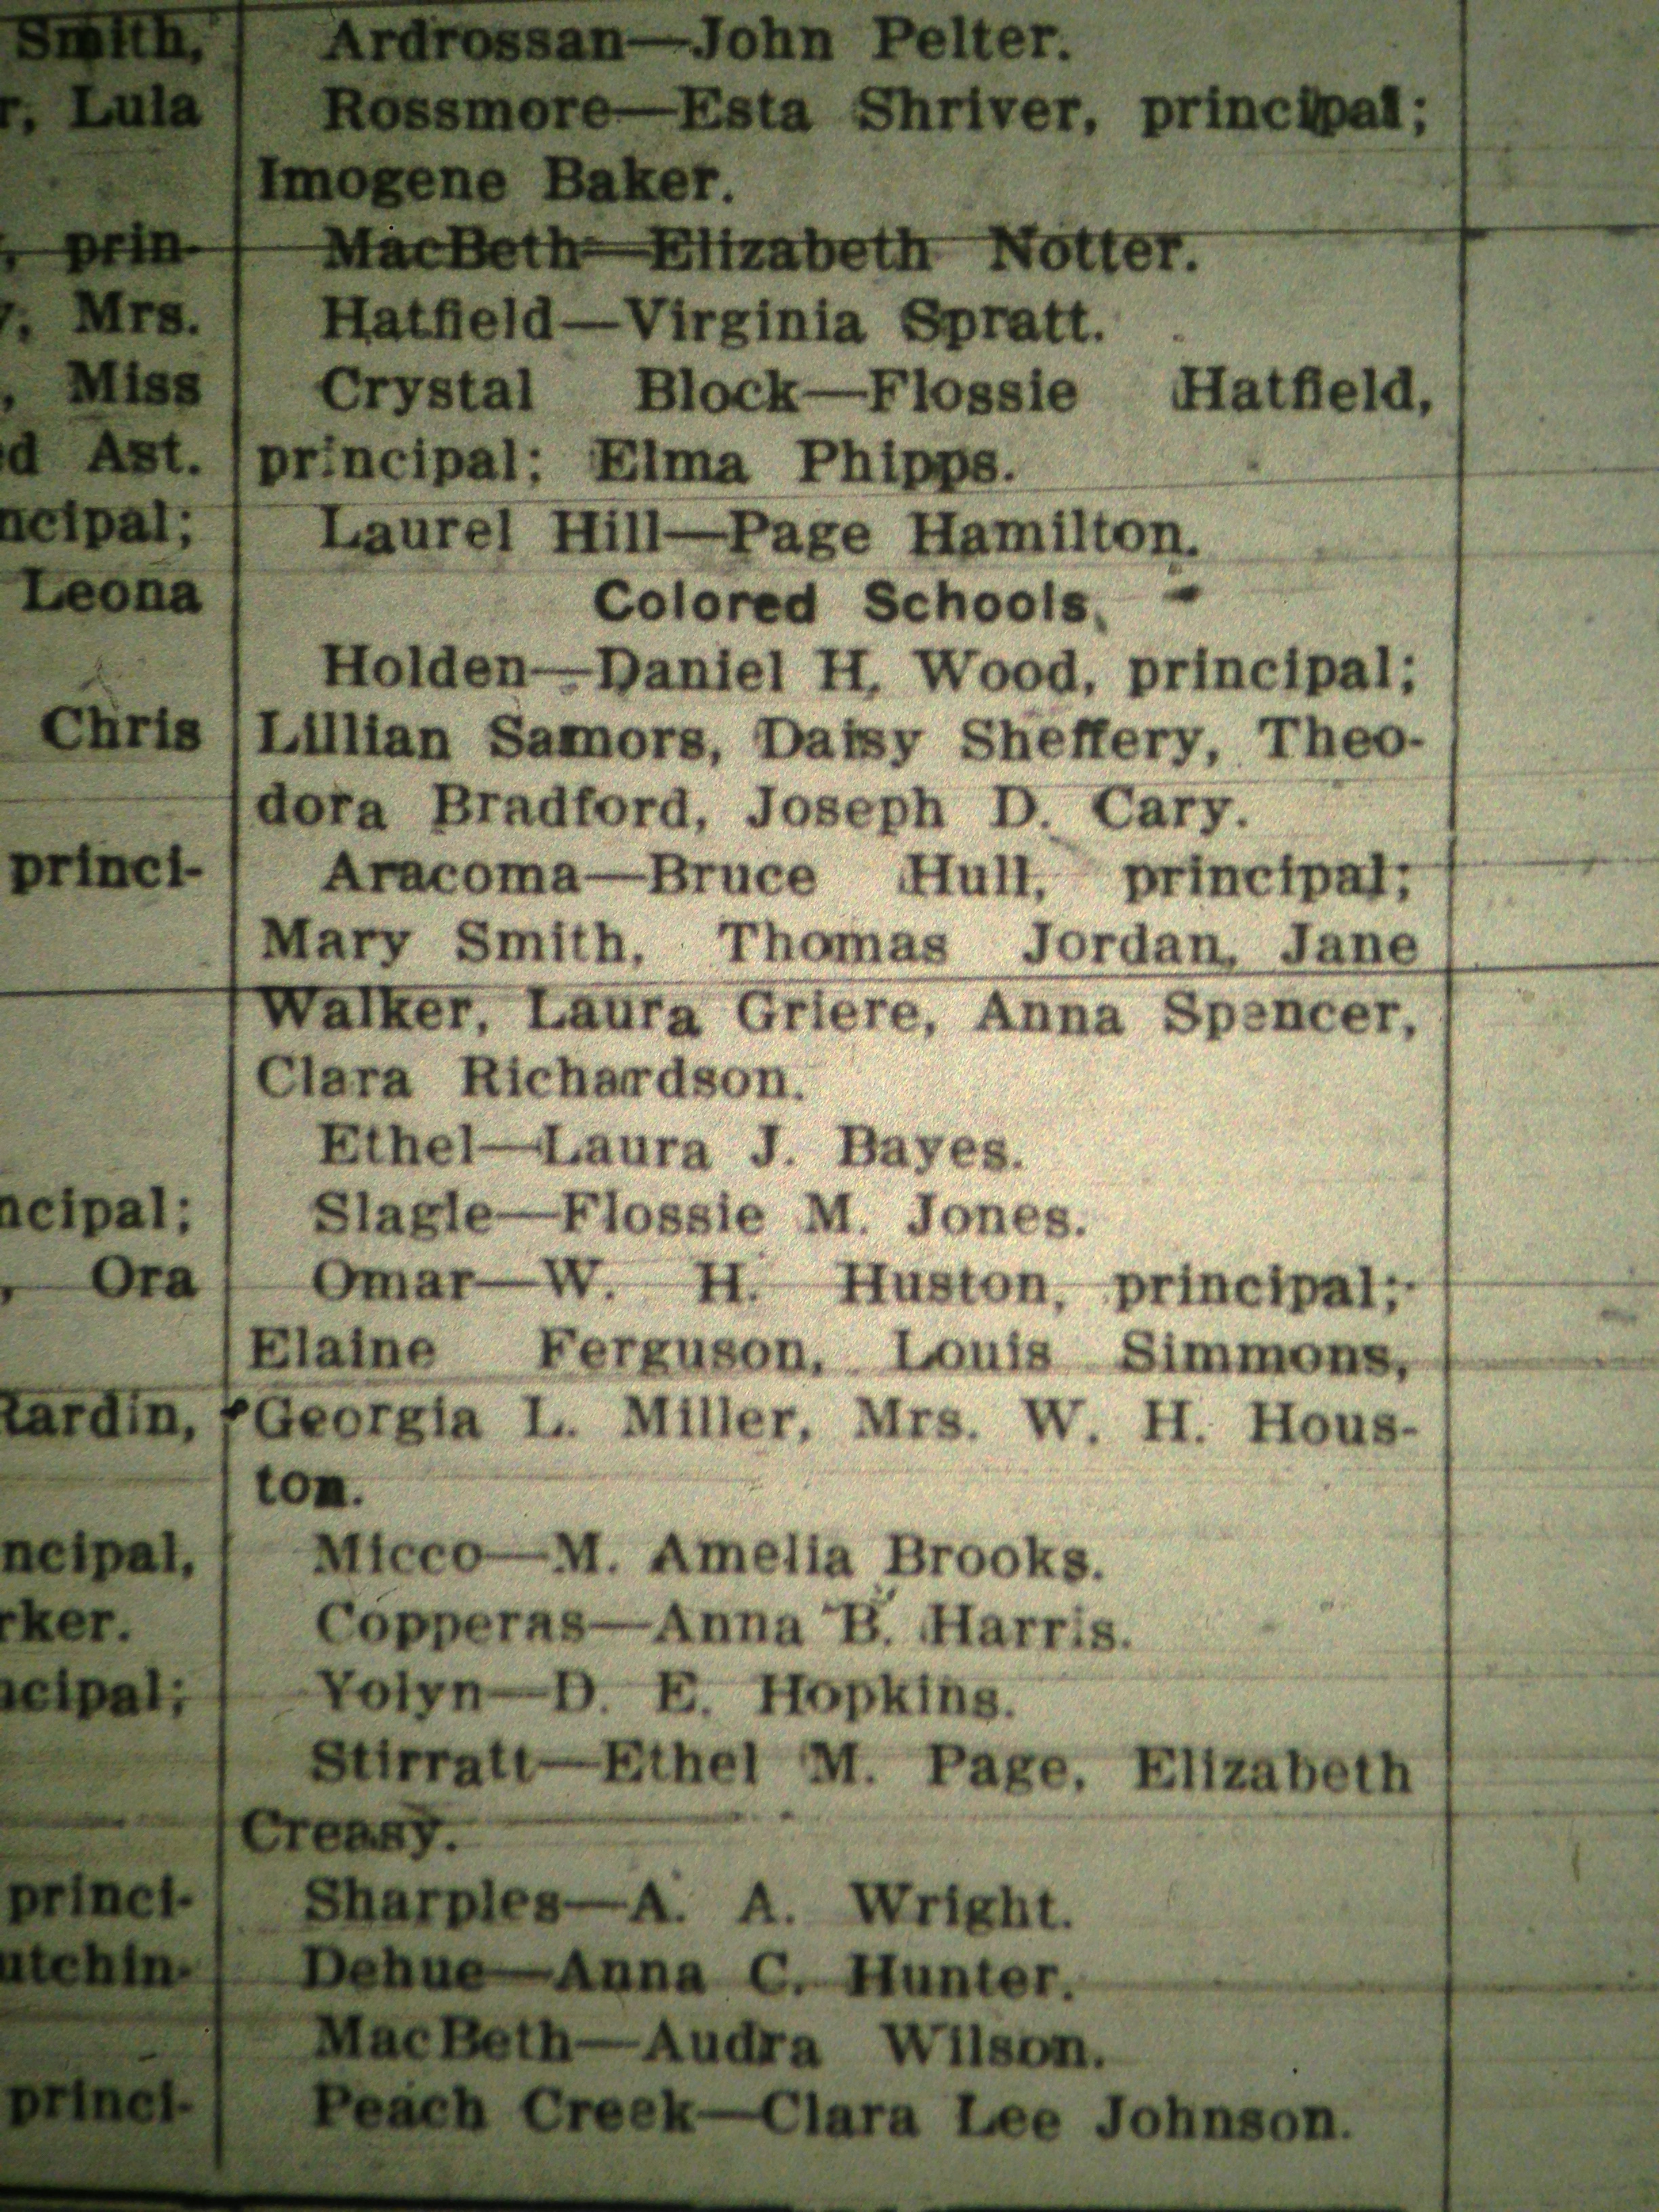 Logan District Colored Schools LB 08.26.1927 2